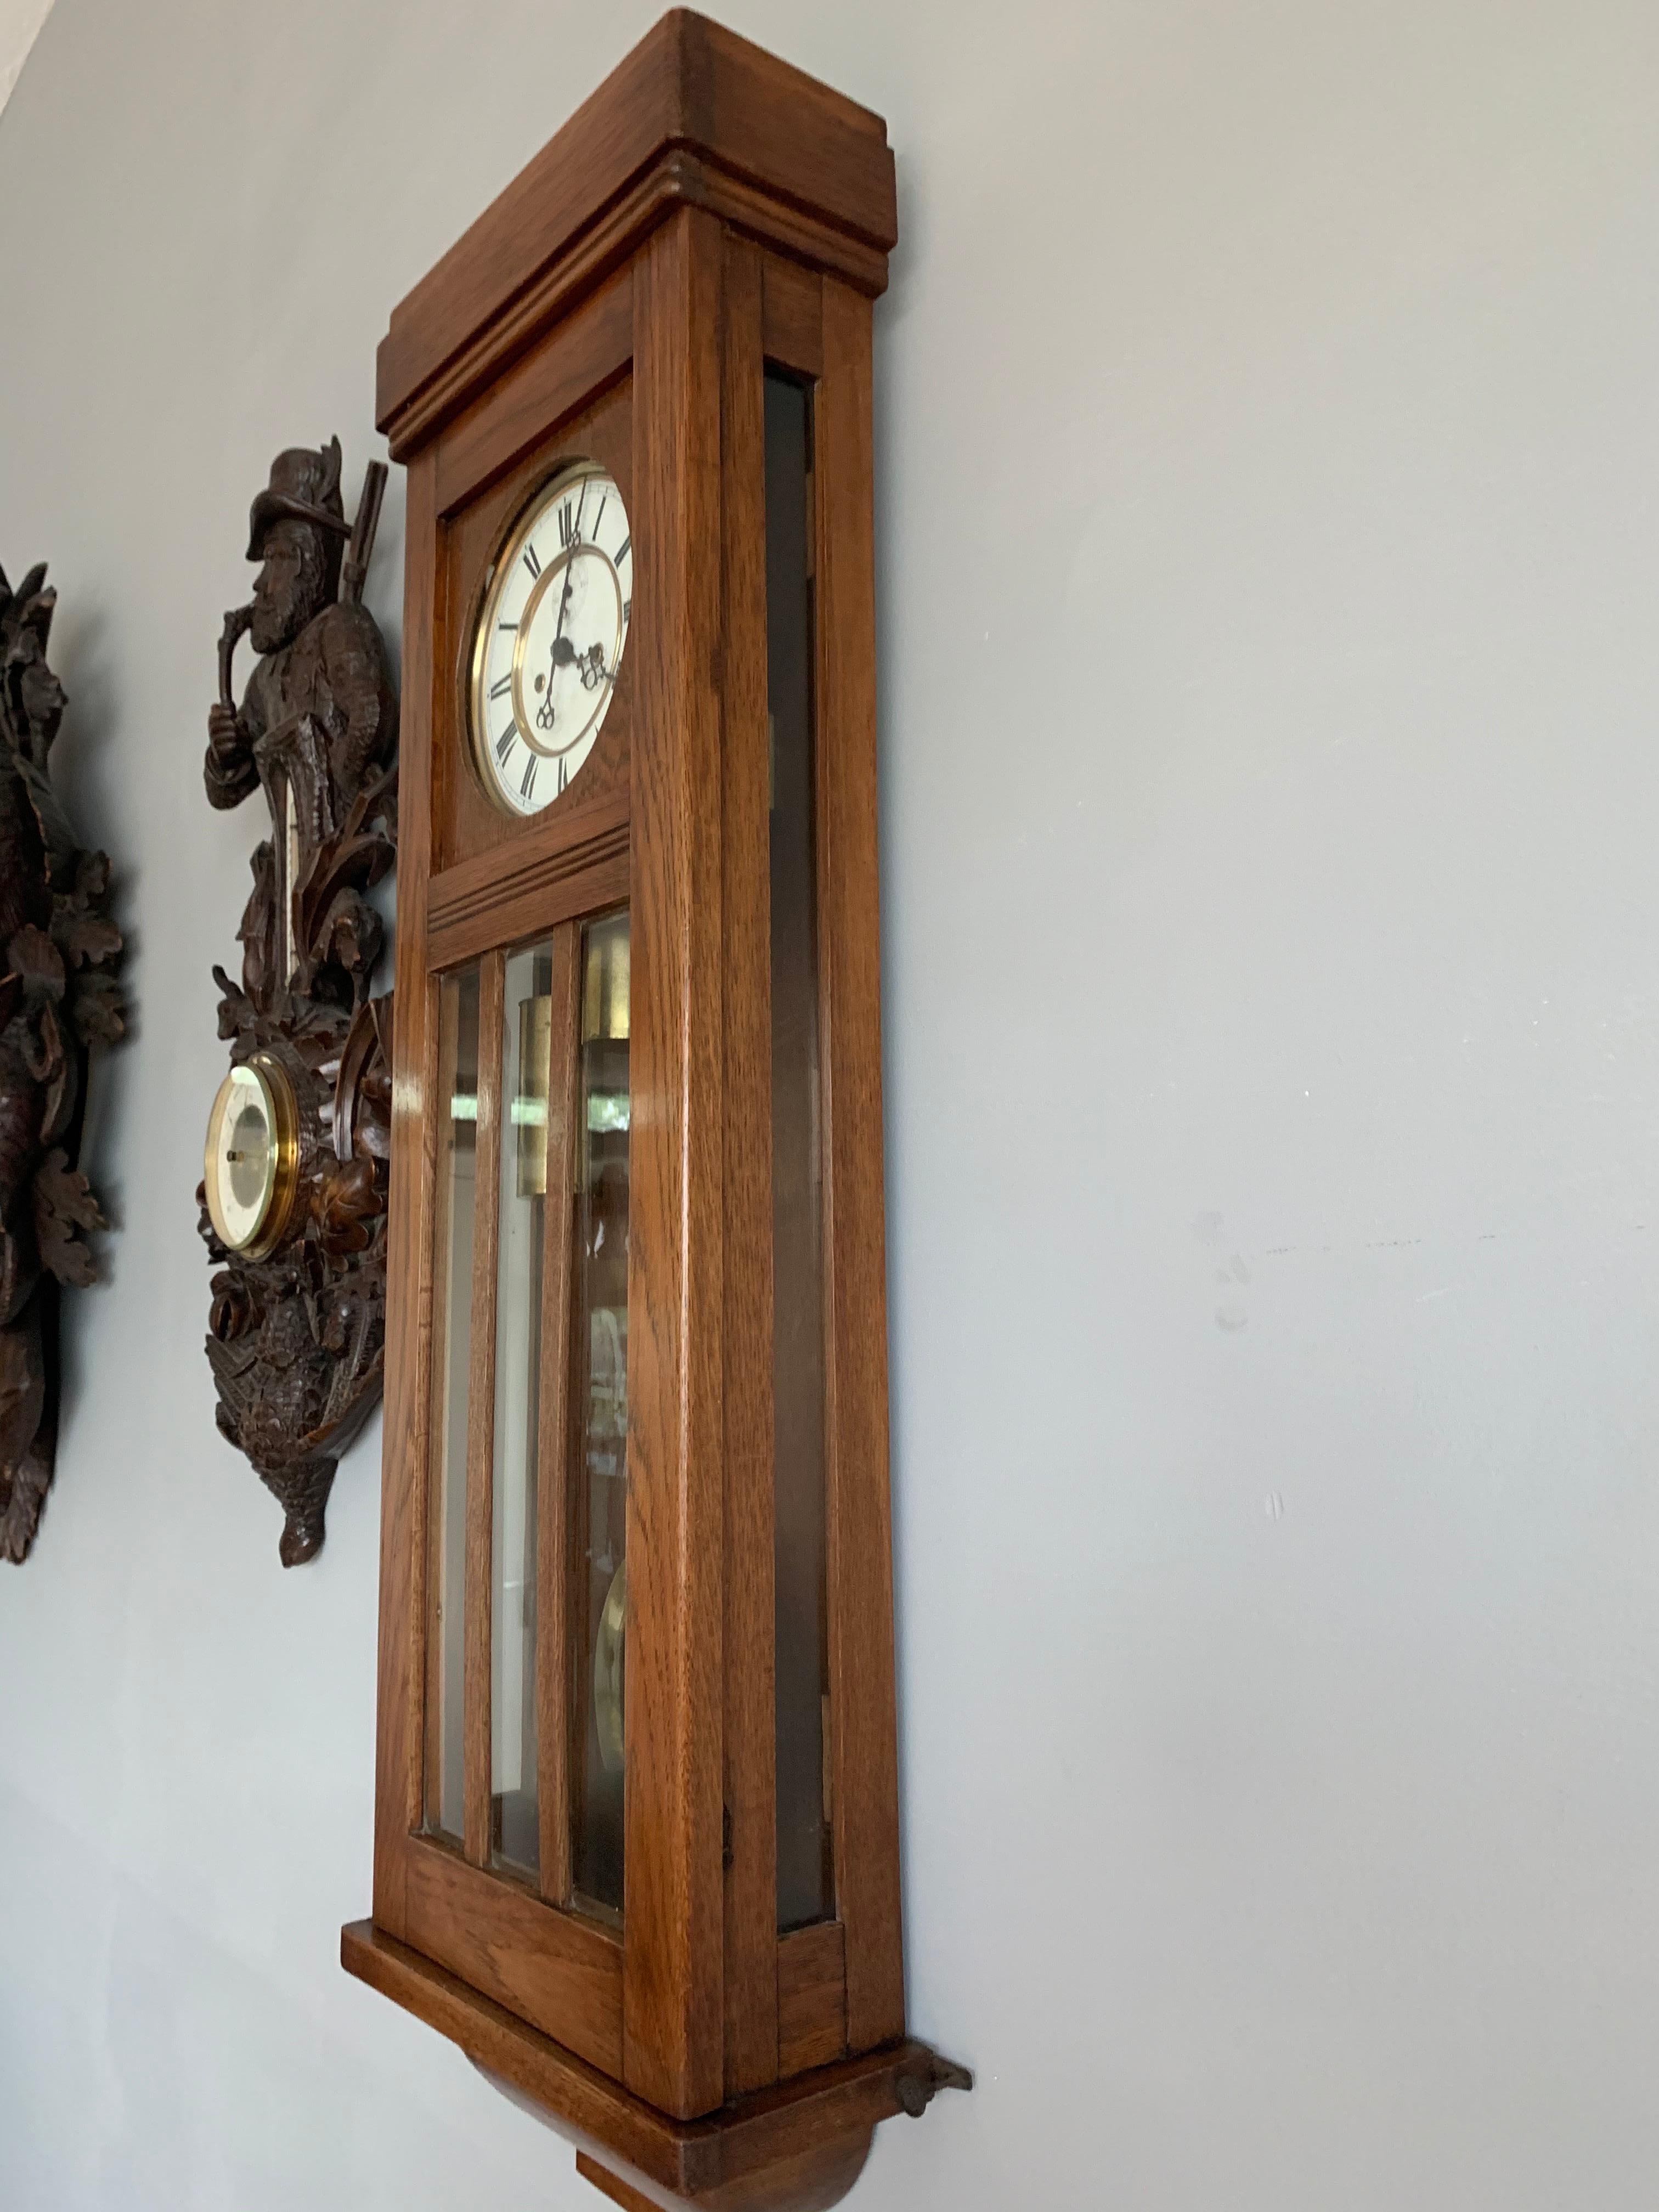 Beautiful and Stylish Arts & Crafts Era Handmade Oak Vienna Regulator Wall Clock 1